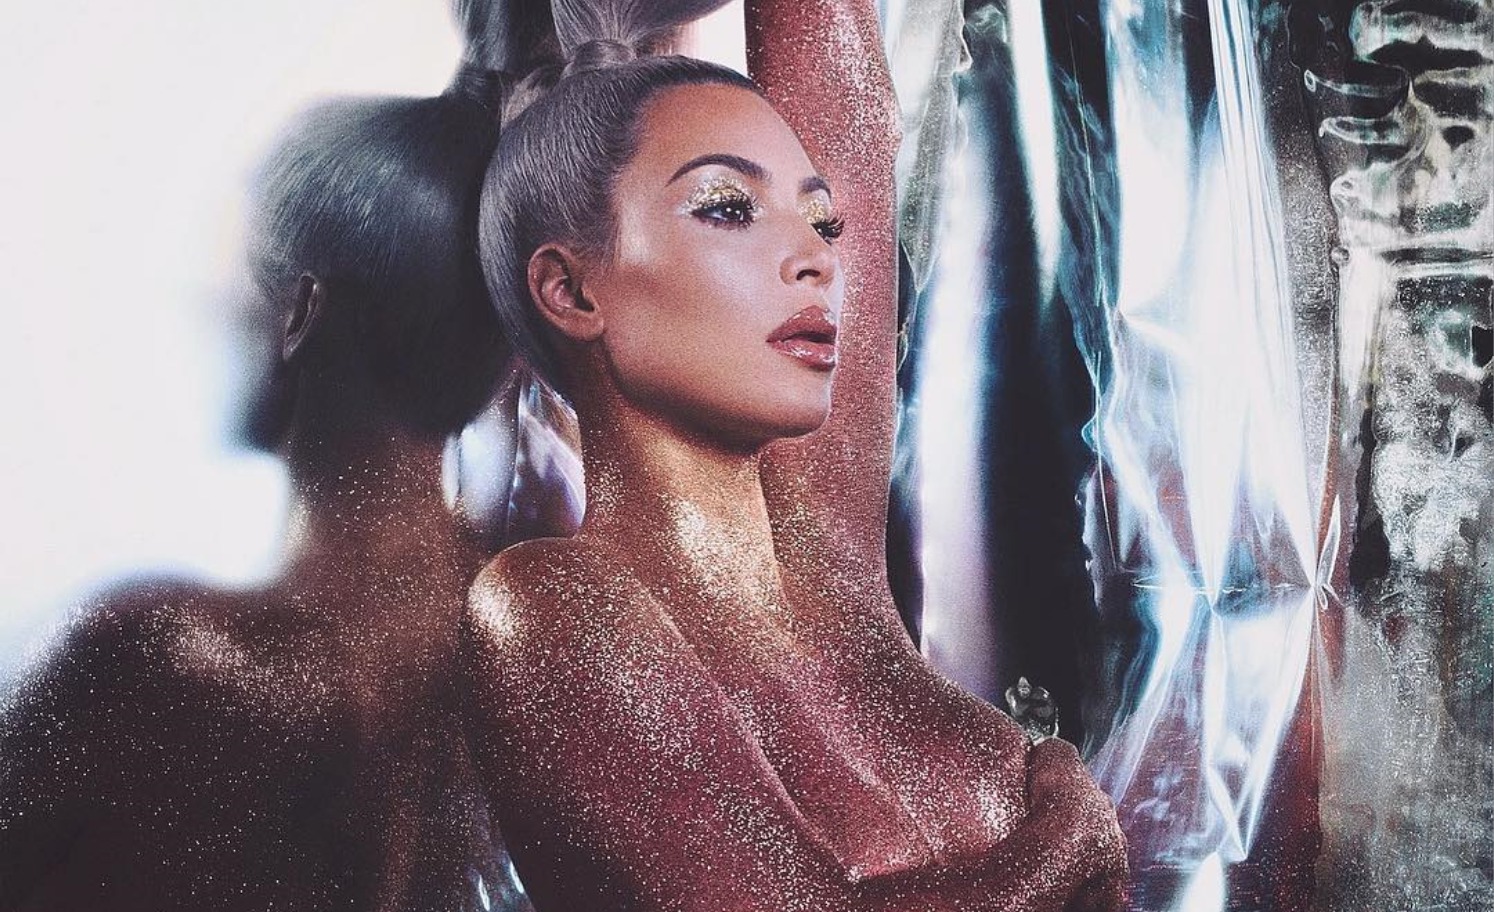 Kim Kardashianit i bien të pasmet, po çudit rrjetin me foton e saj të fundit